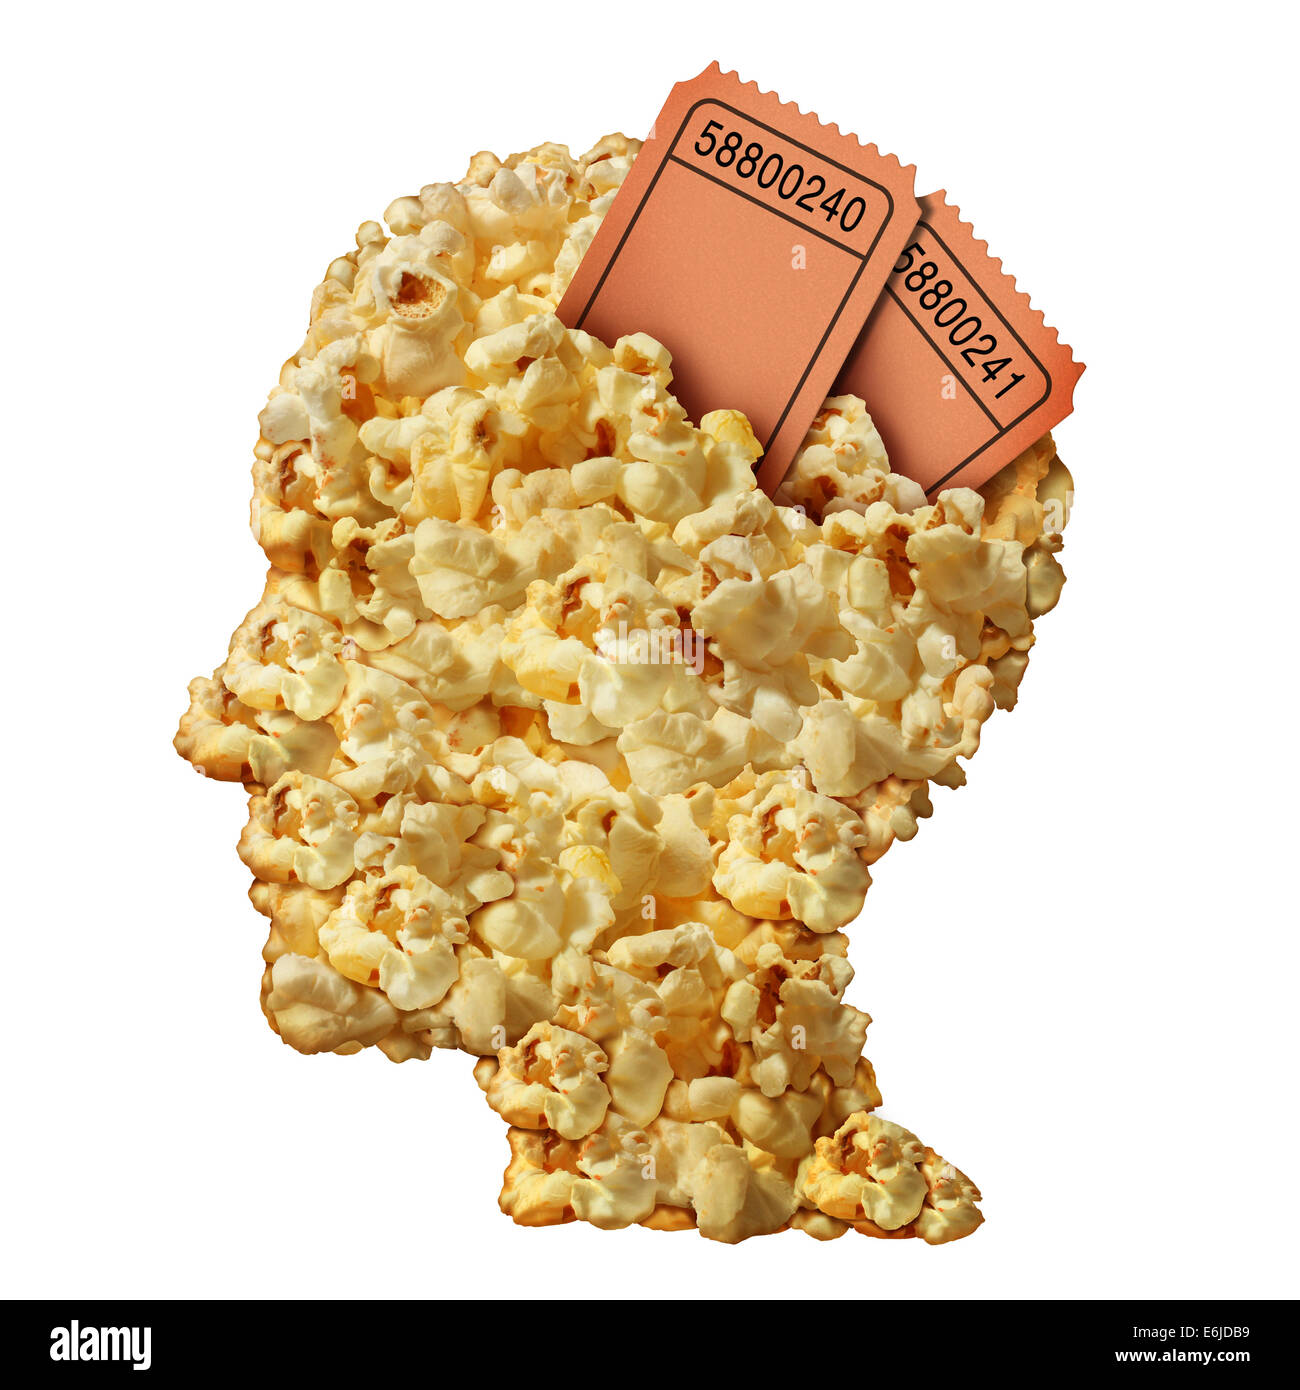 Denken Filme Konzept und Film zu führen oder Bewertungen Symbol als ein Haufen Popcorn geformt wie ein menschlicher Kopf mit Ticket Stubs als ein Symbol für Unterhaltung und öffentlichen Medienkonsum. Stockfoto